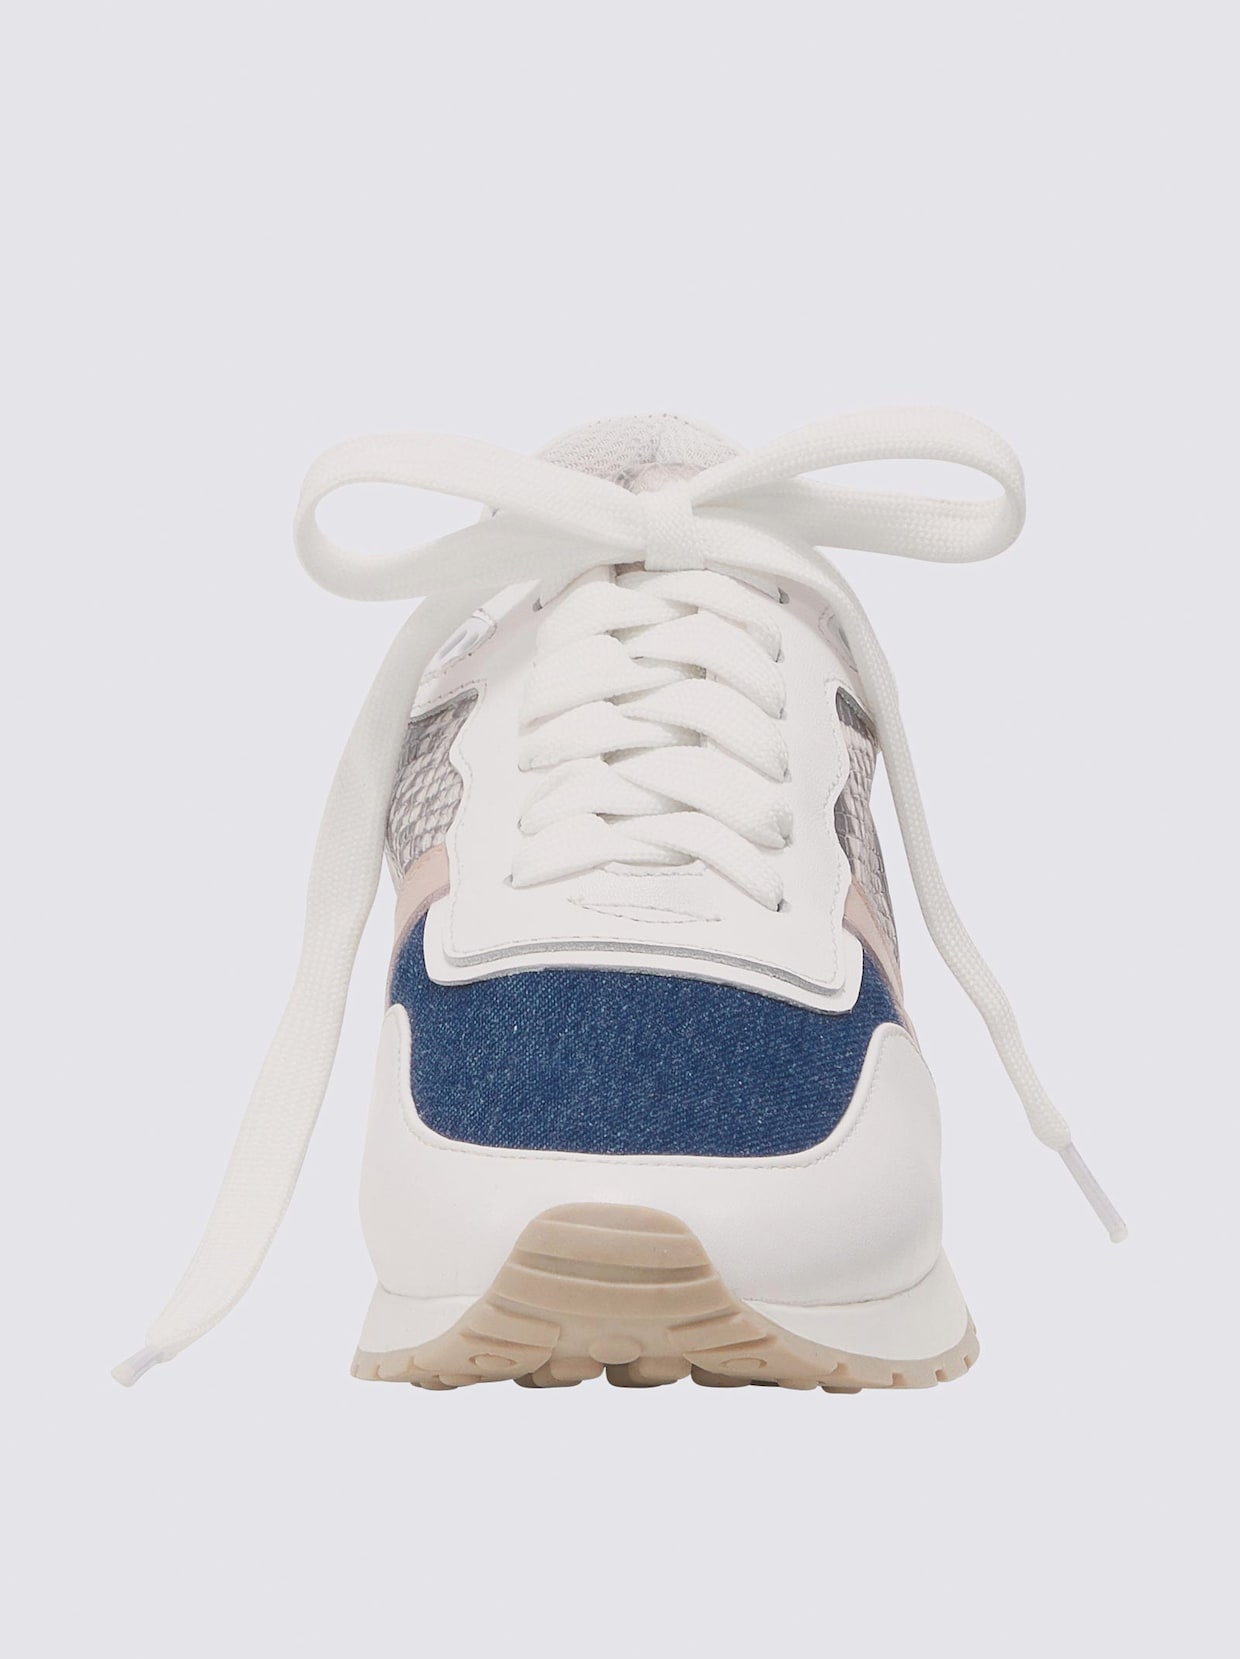 heine Sneaker - weiß-blau-gemustert